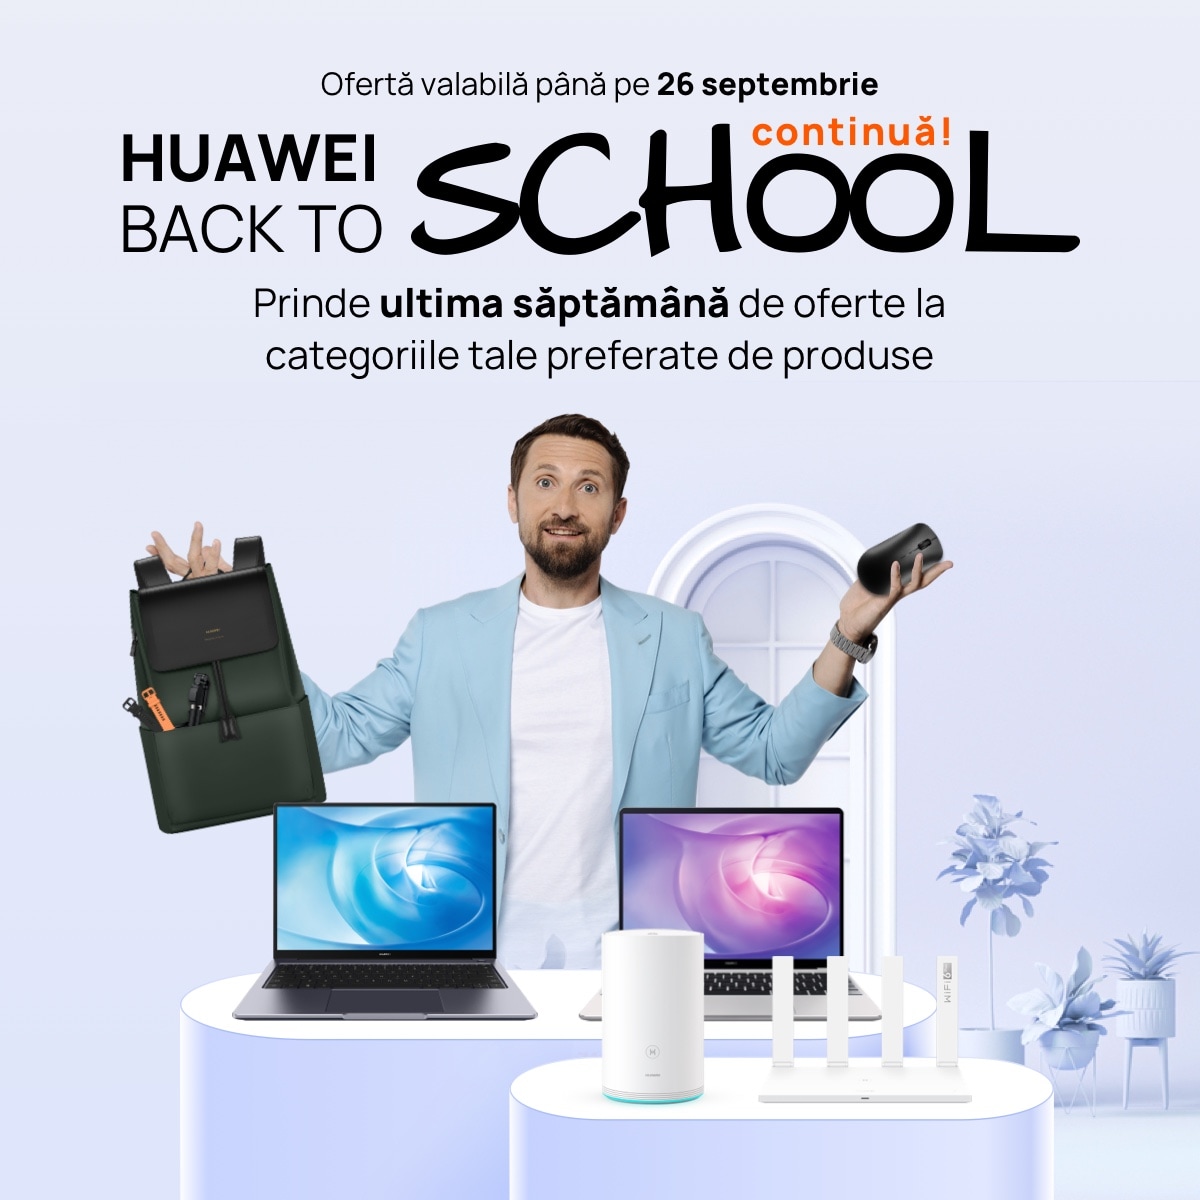 Ultima săptămână a campaniei Back To School vine cu oferte la toate categoriile de produse Huawei